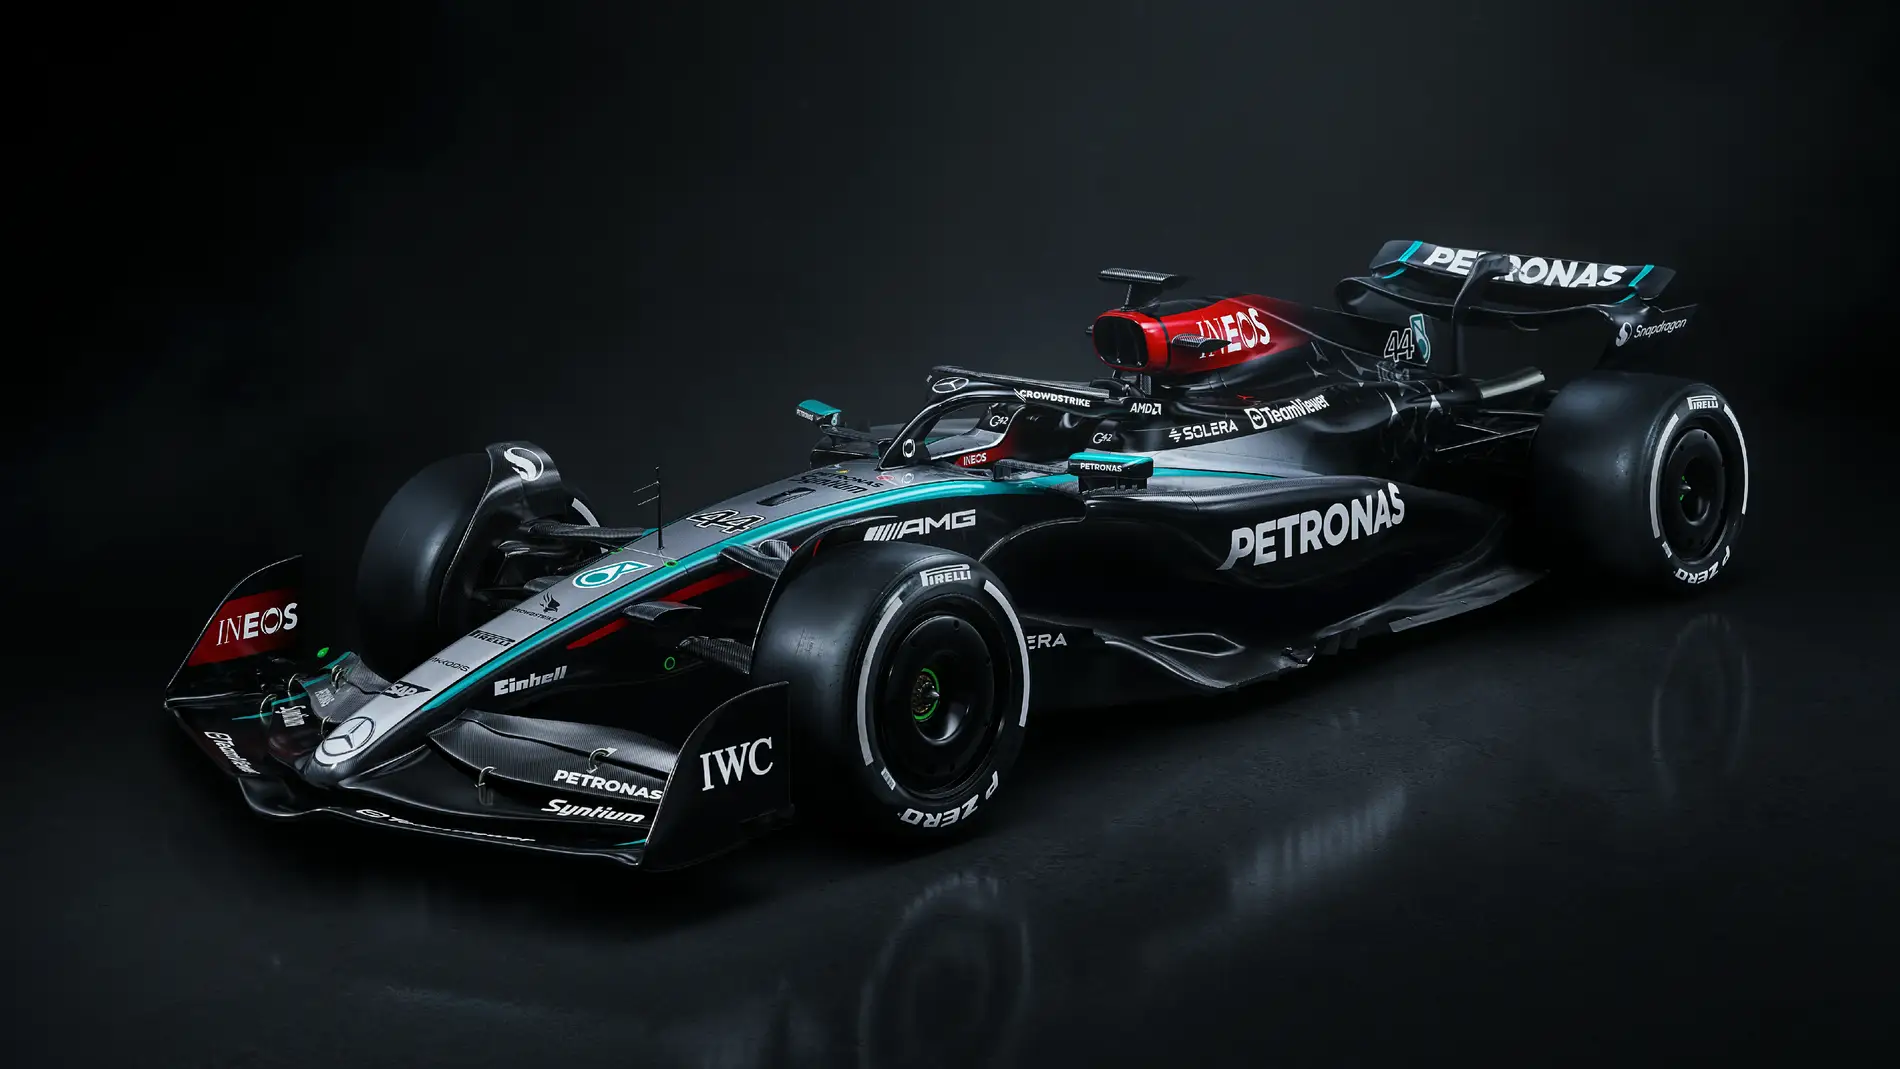 Mercedes-AMG F1 desvela su nuevo W15